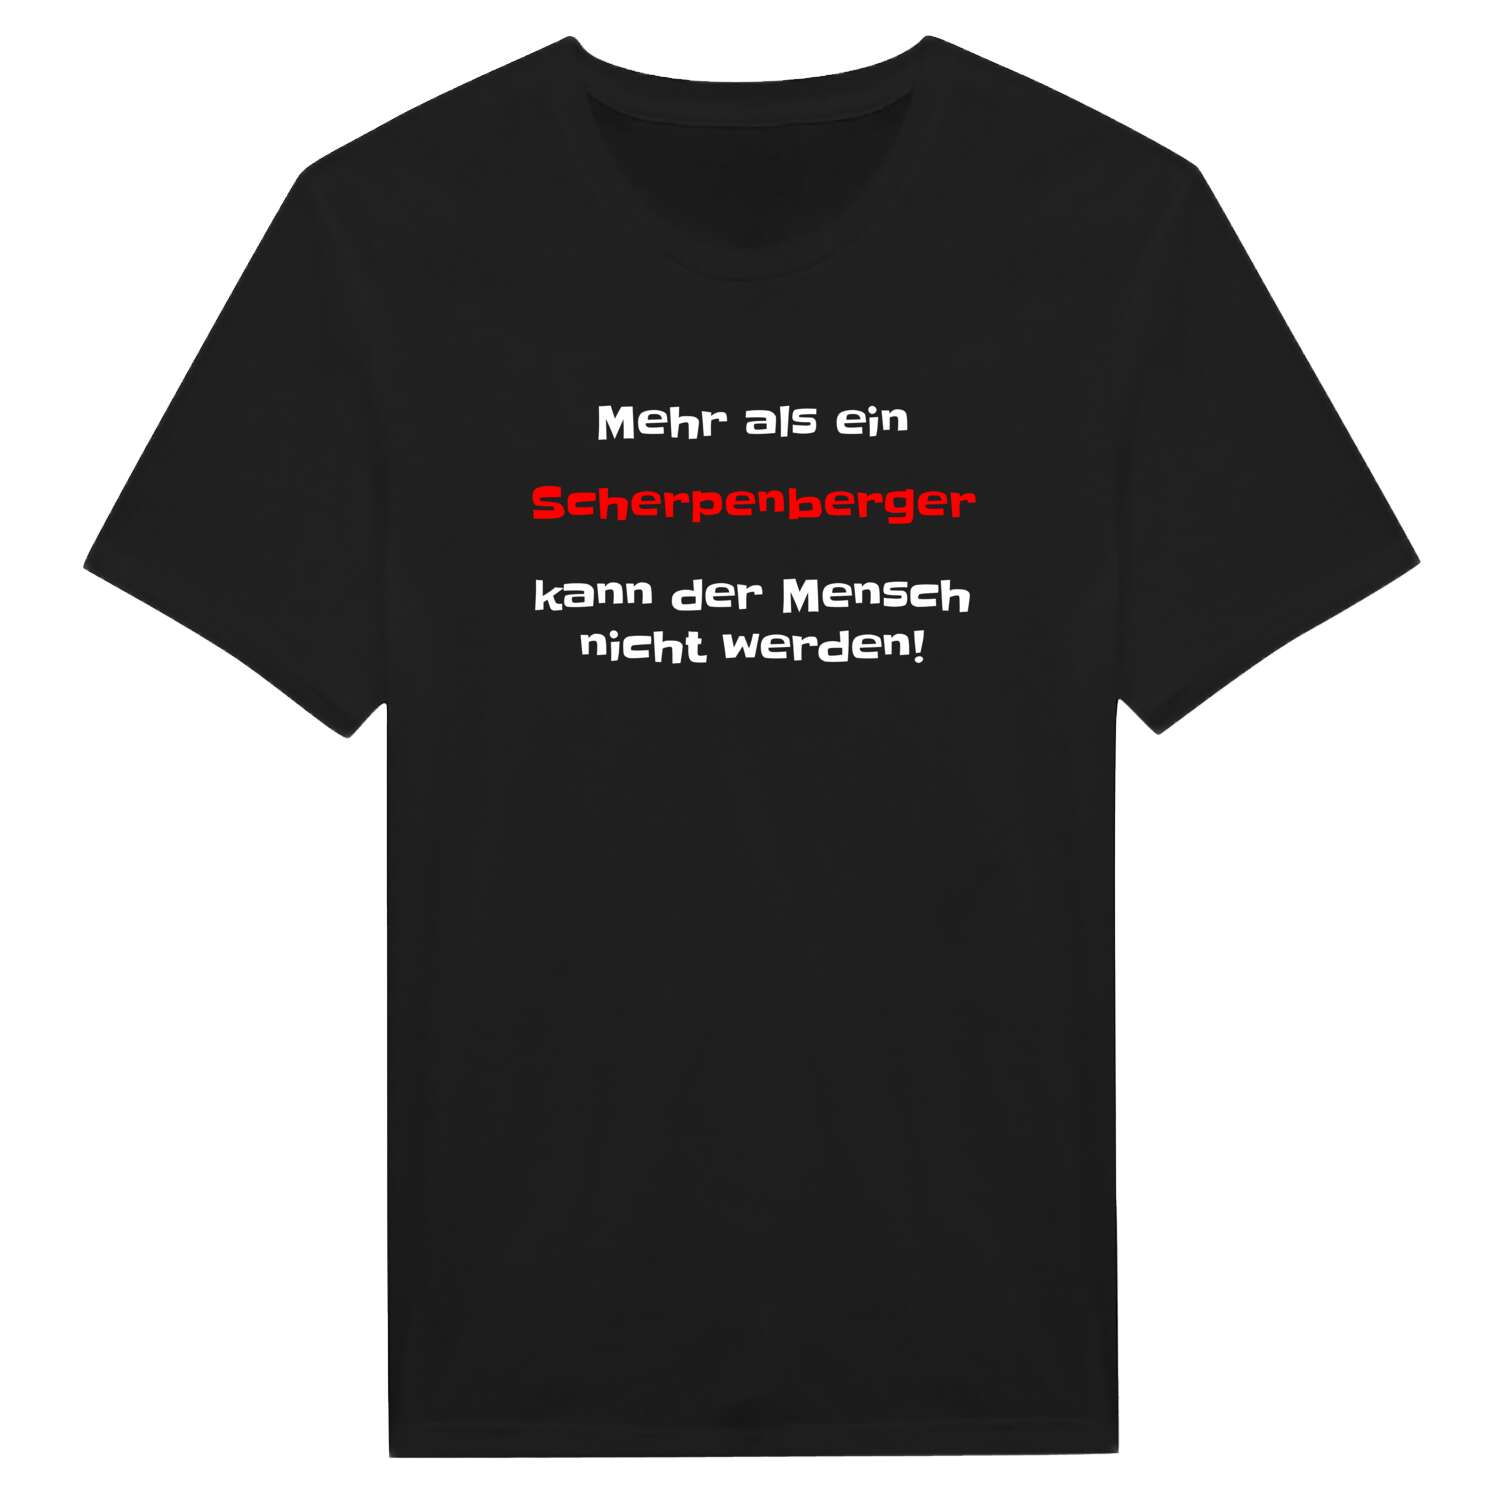 Scherpenberg T-Shirt »Mehr als ein«